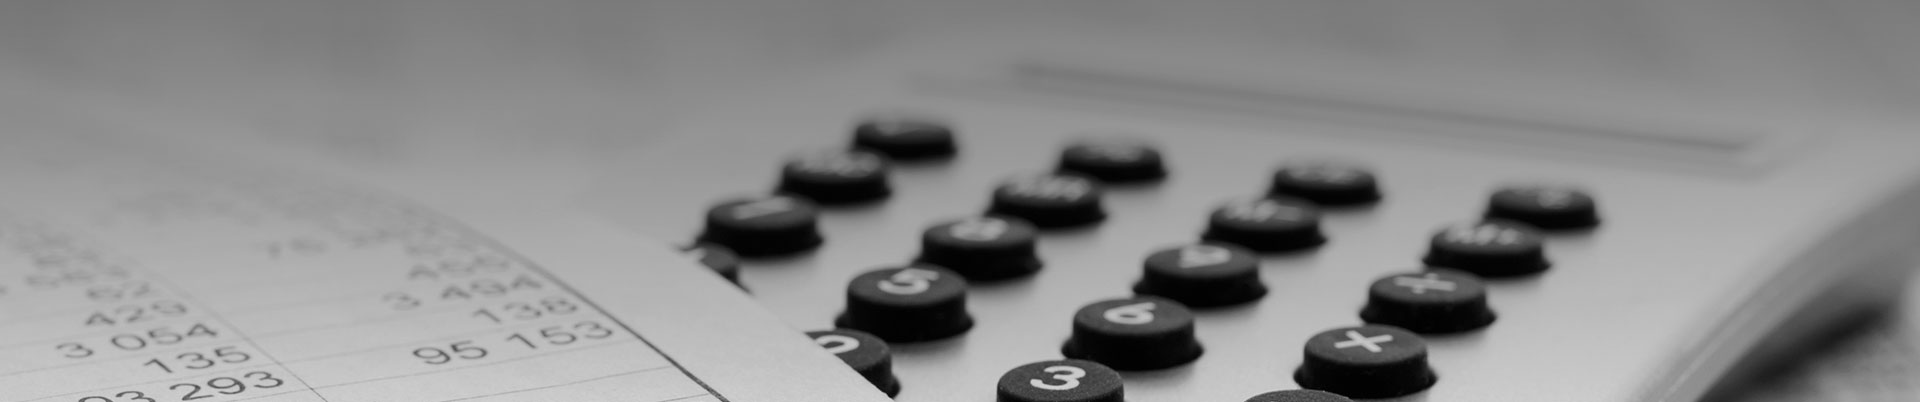 Se muestra un teléfono convencional  y un documento con números